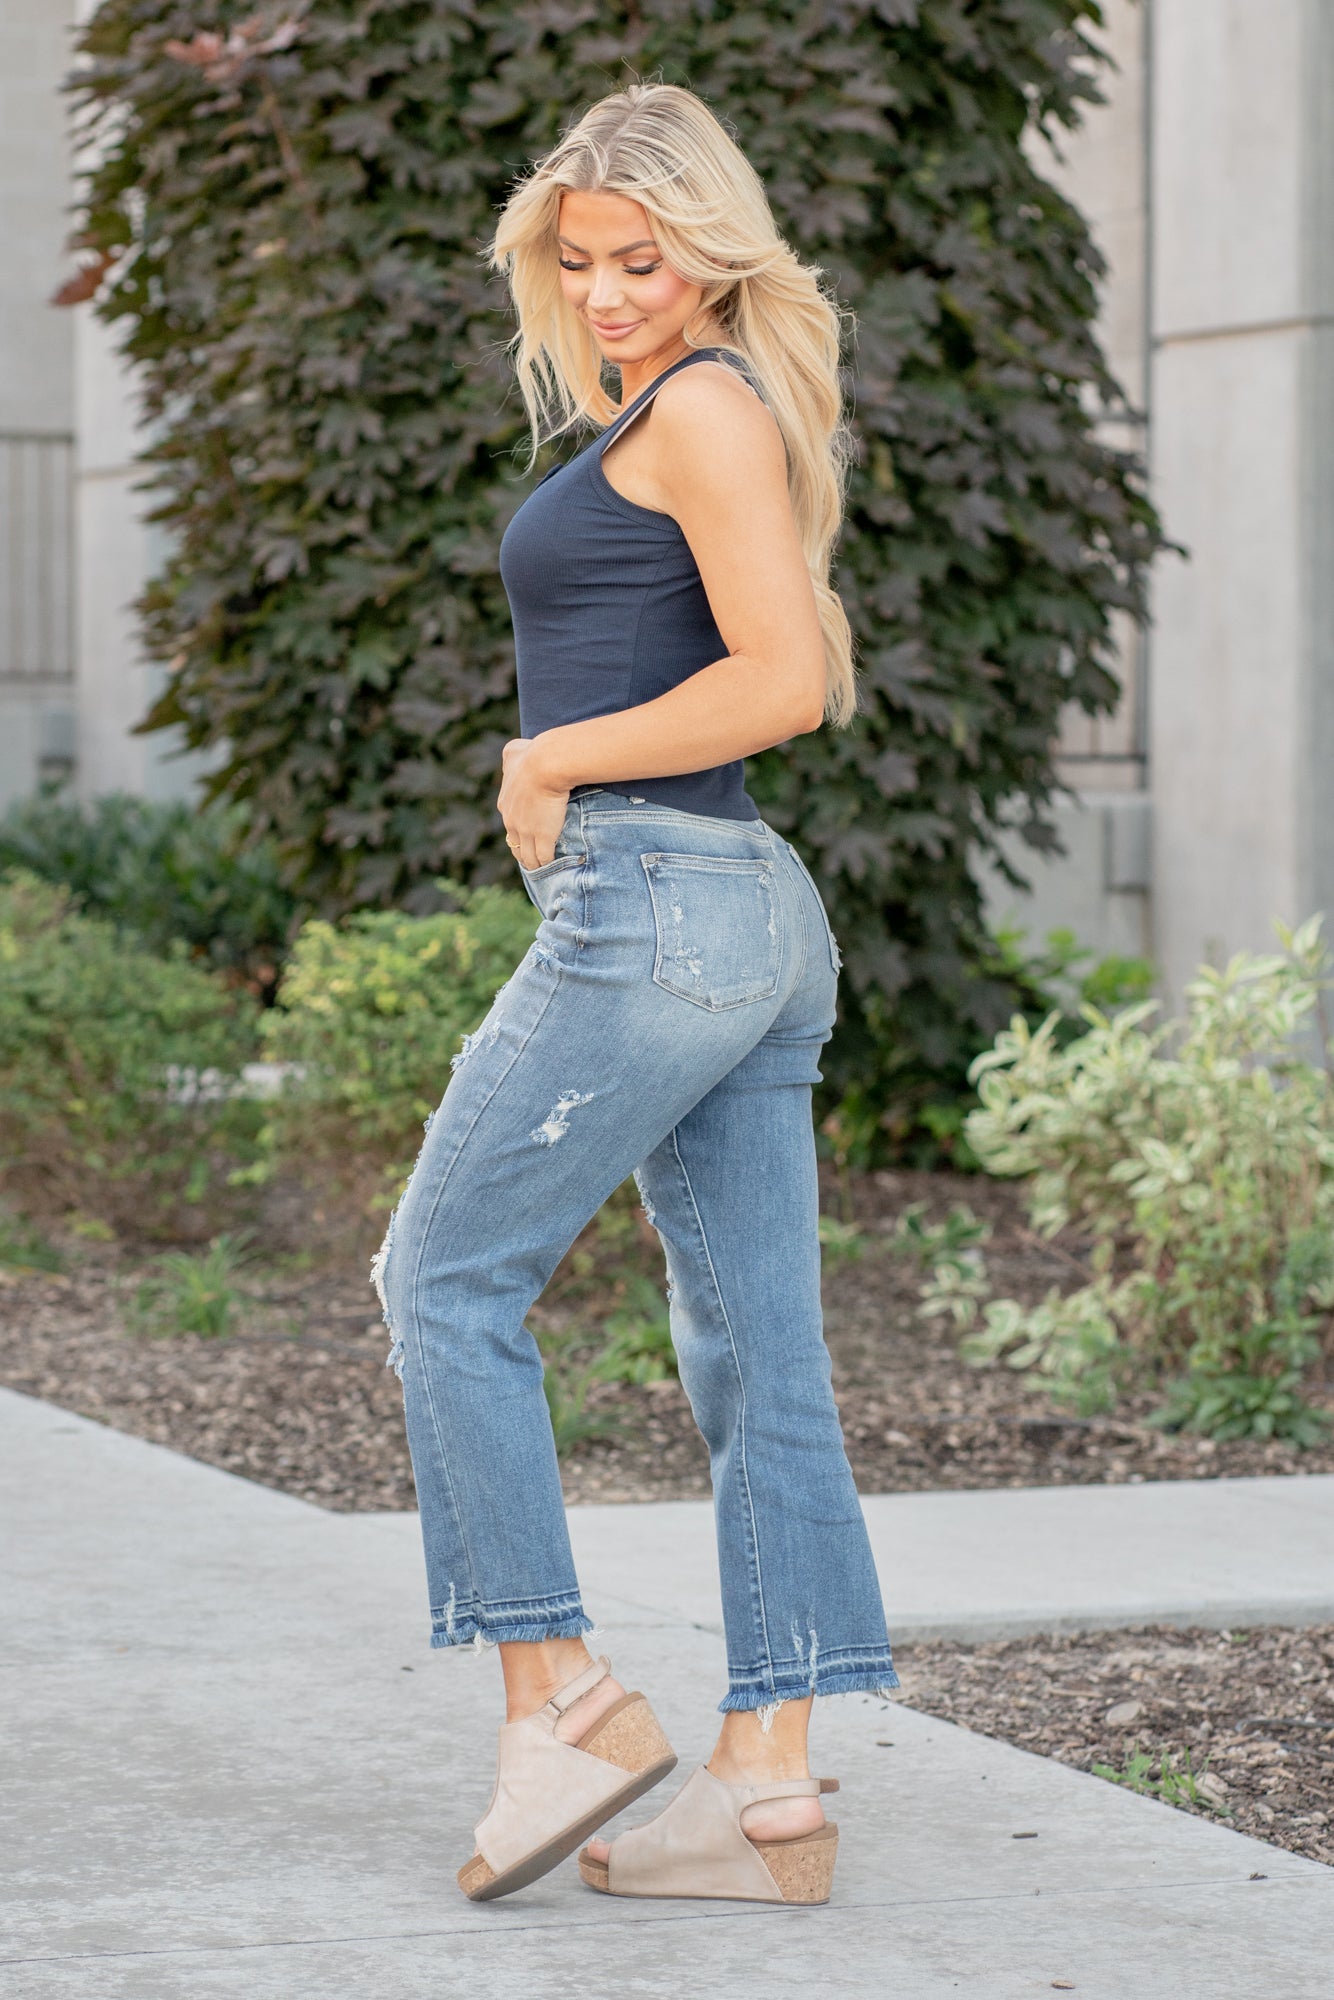 Hot & Delicious Belinda Blue Denim Rhinestone Jeans Medium